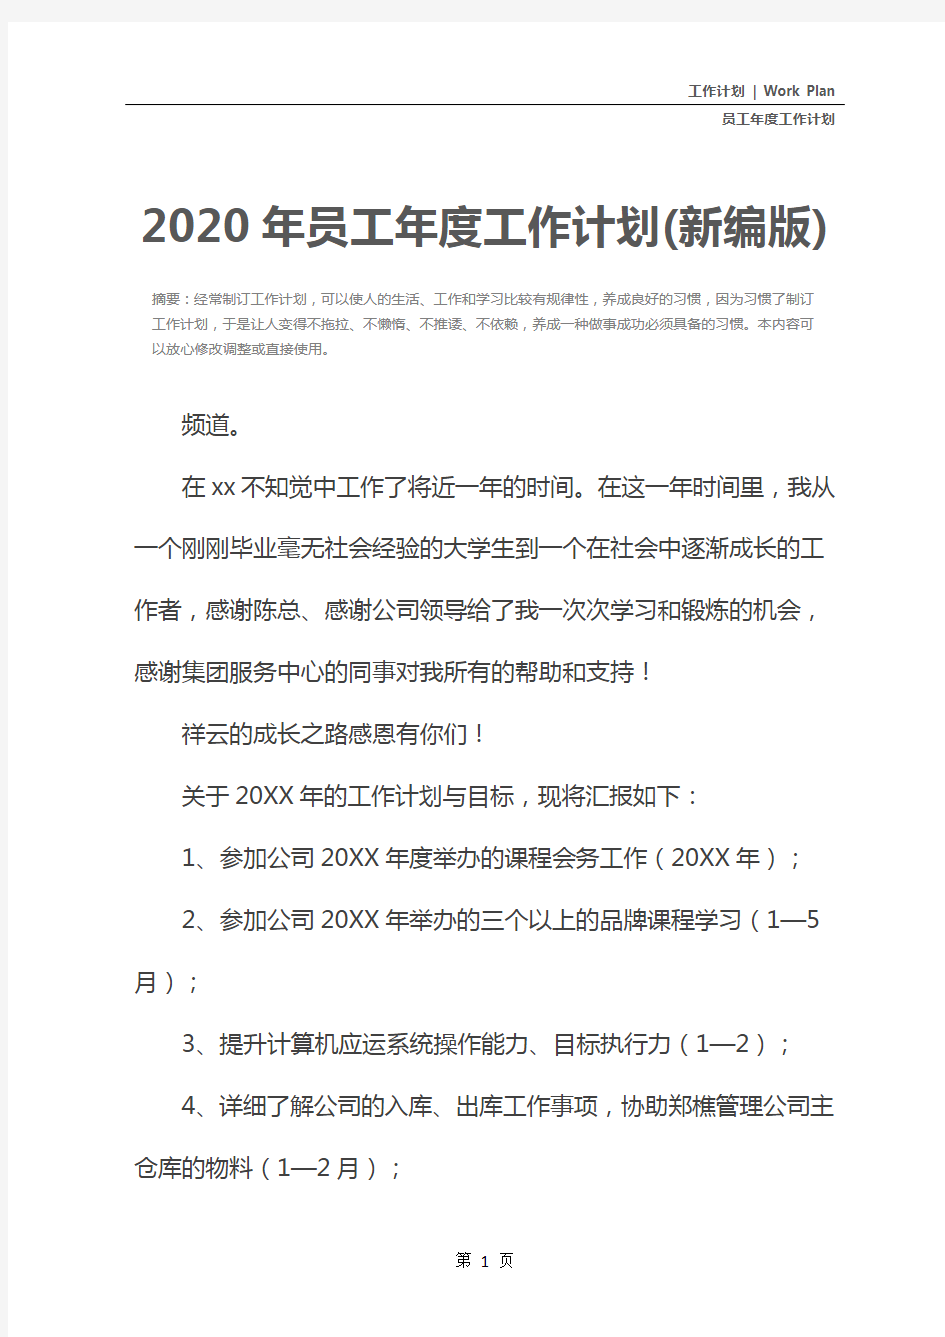 2020年员工年度工作计划(新编版)